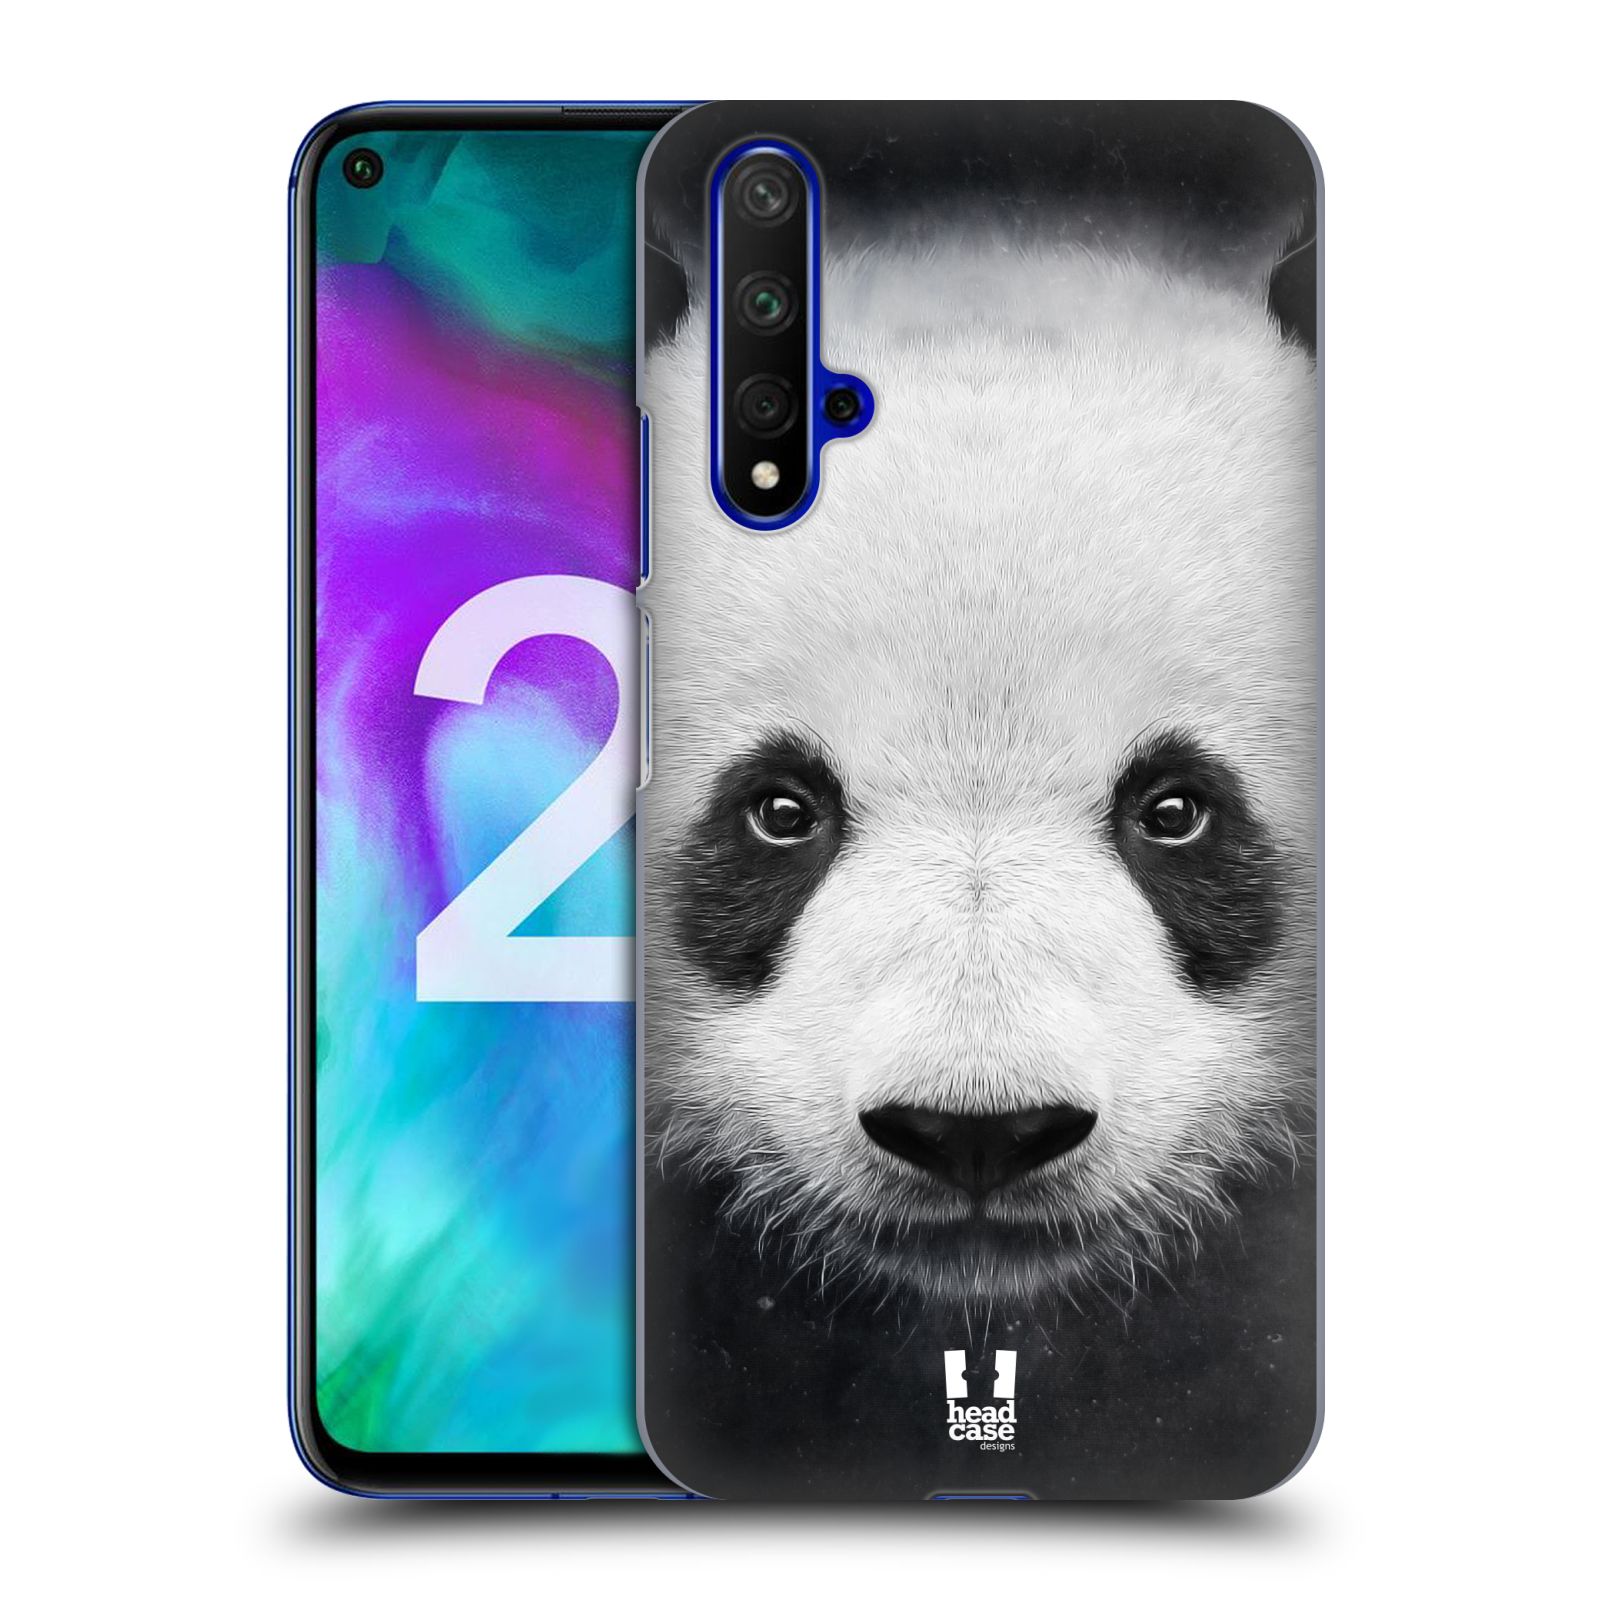 Pouzdro na mobil Honor 20 - HEAD CASE - vzor Zvířecí tváře medvěd panda